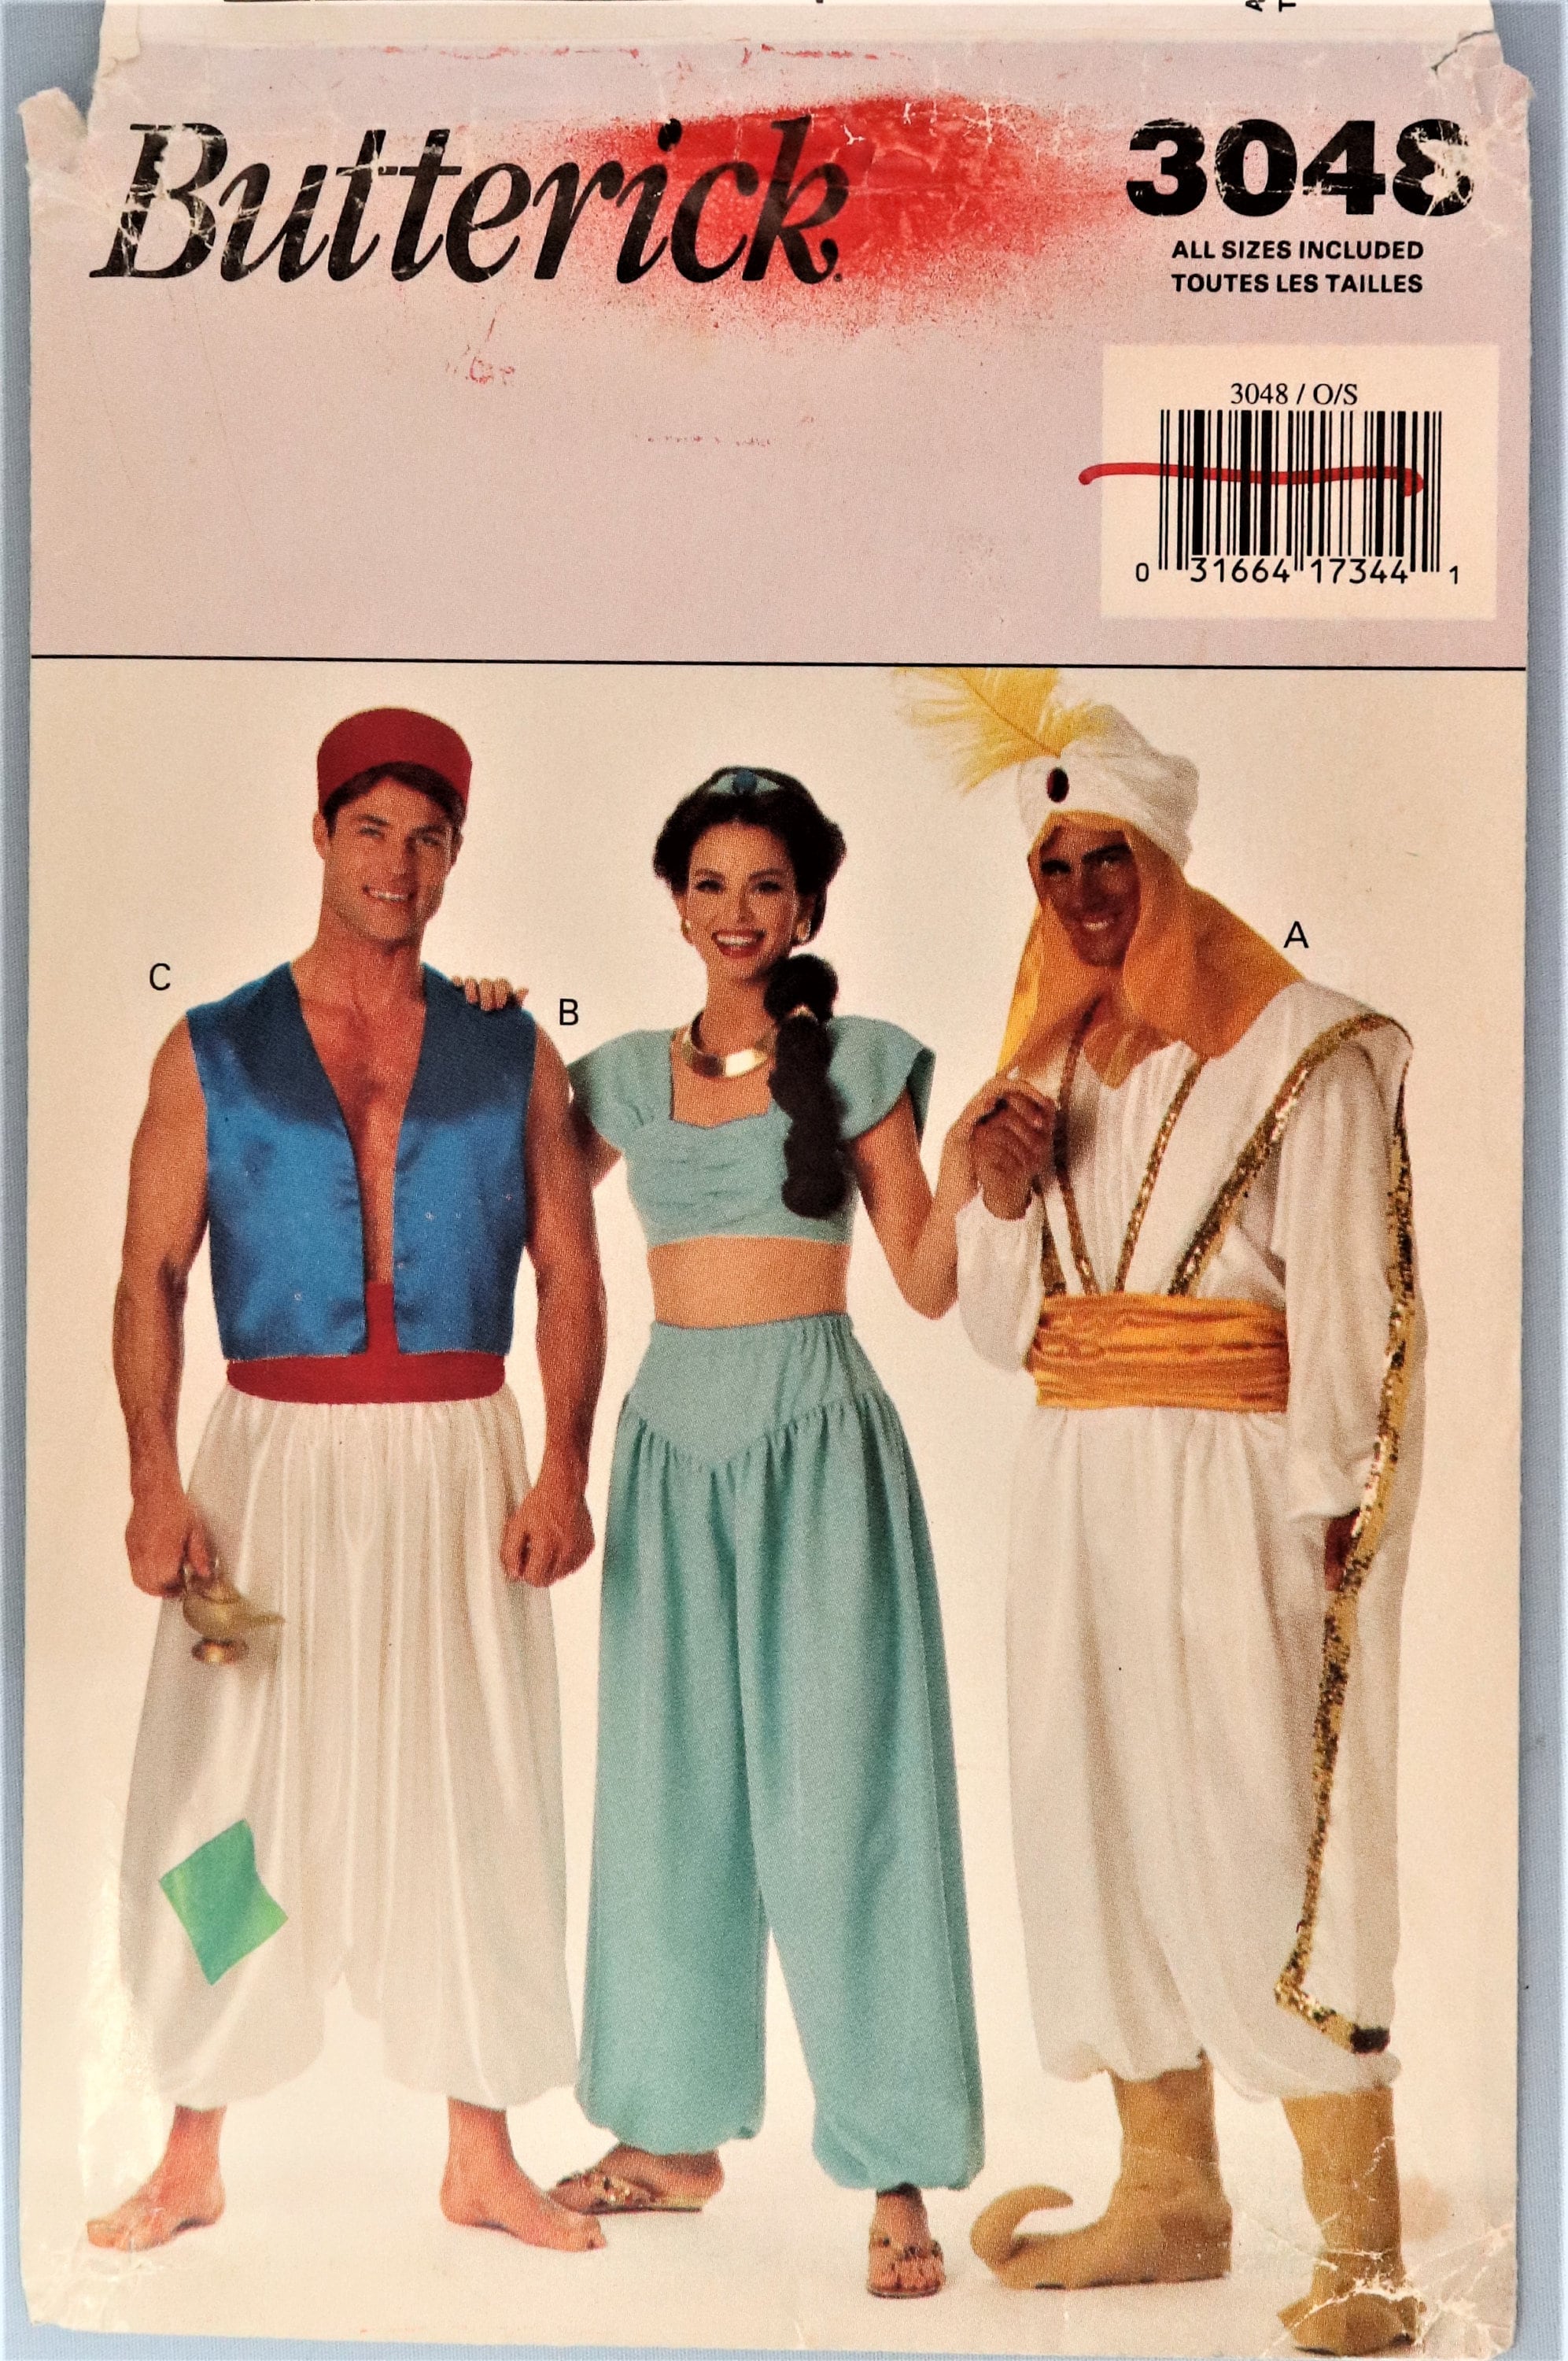 Aladdin Genie Costume Adult 